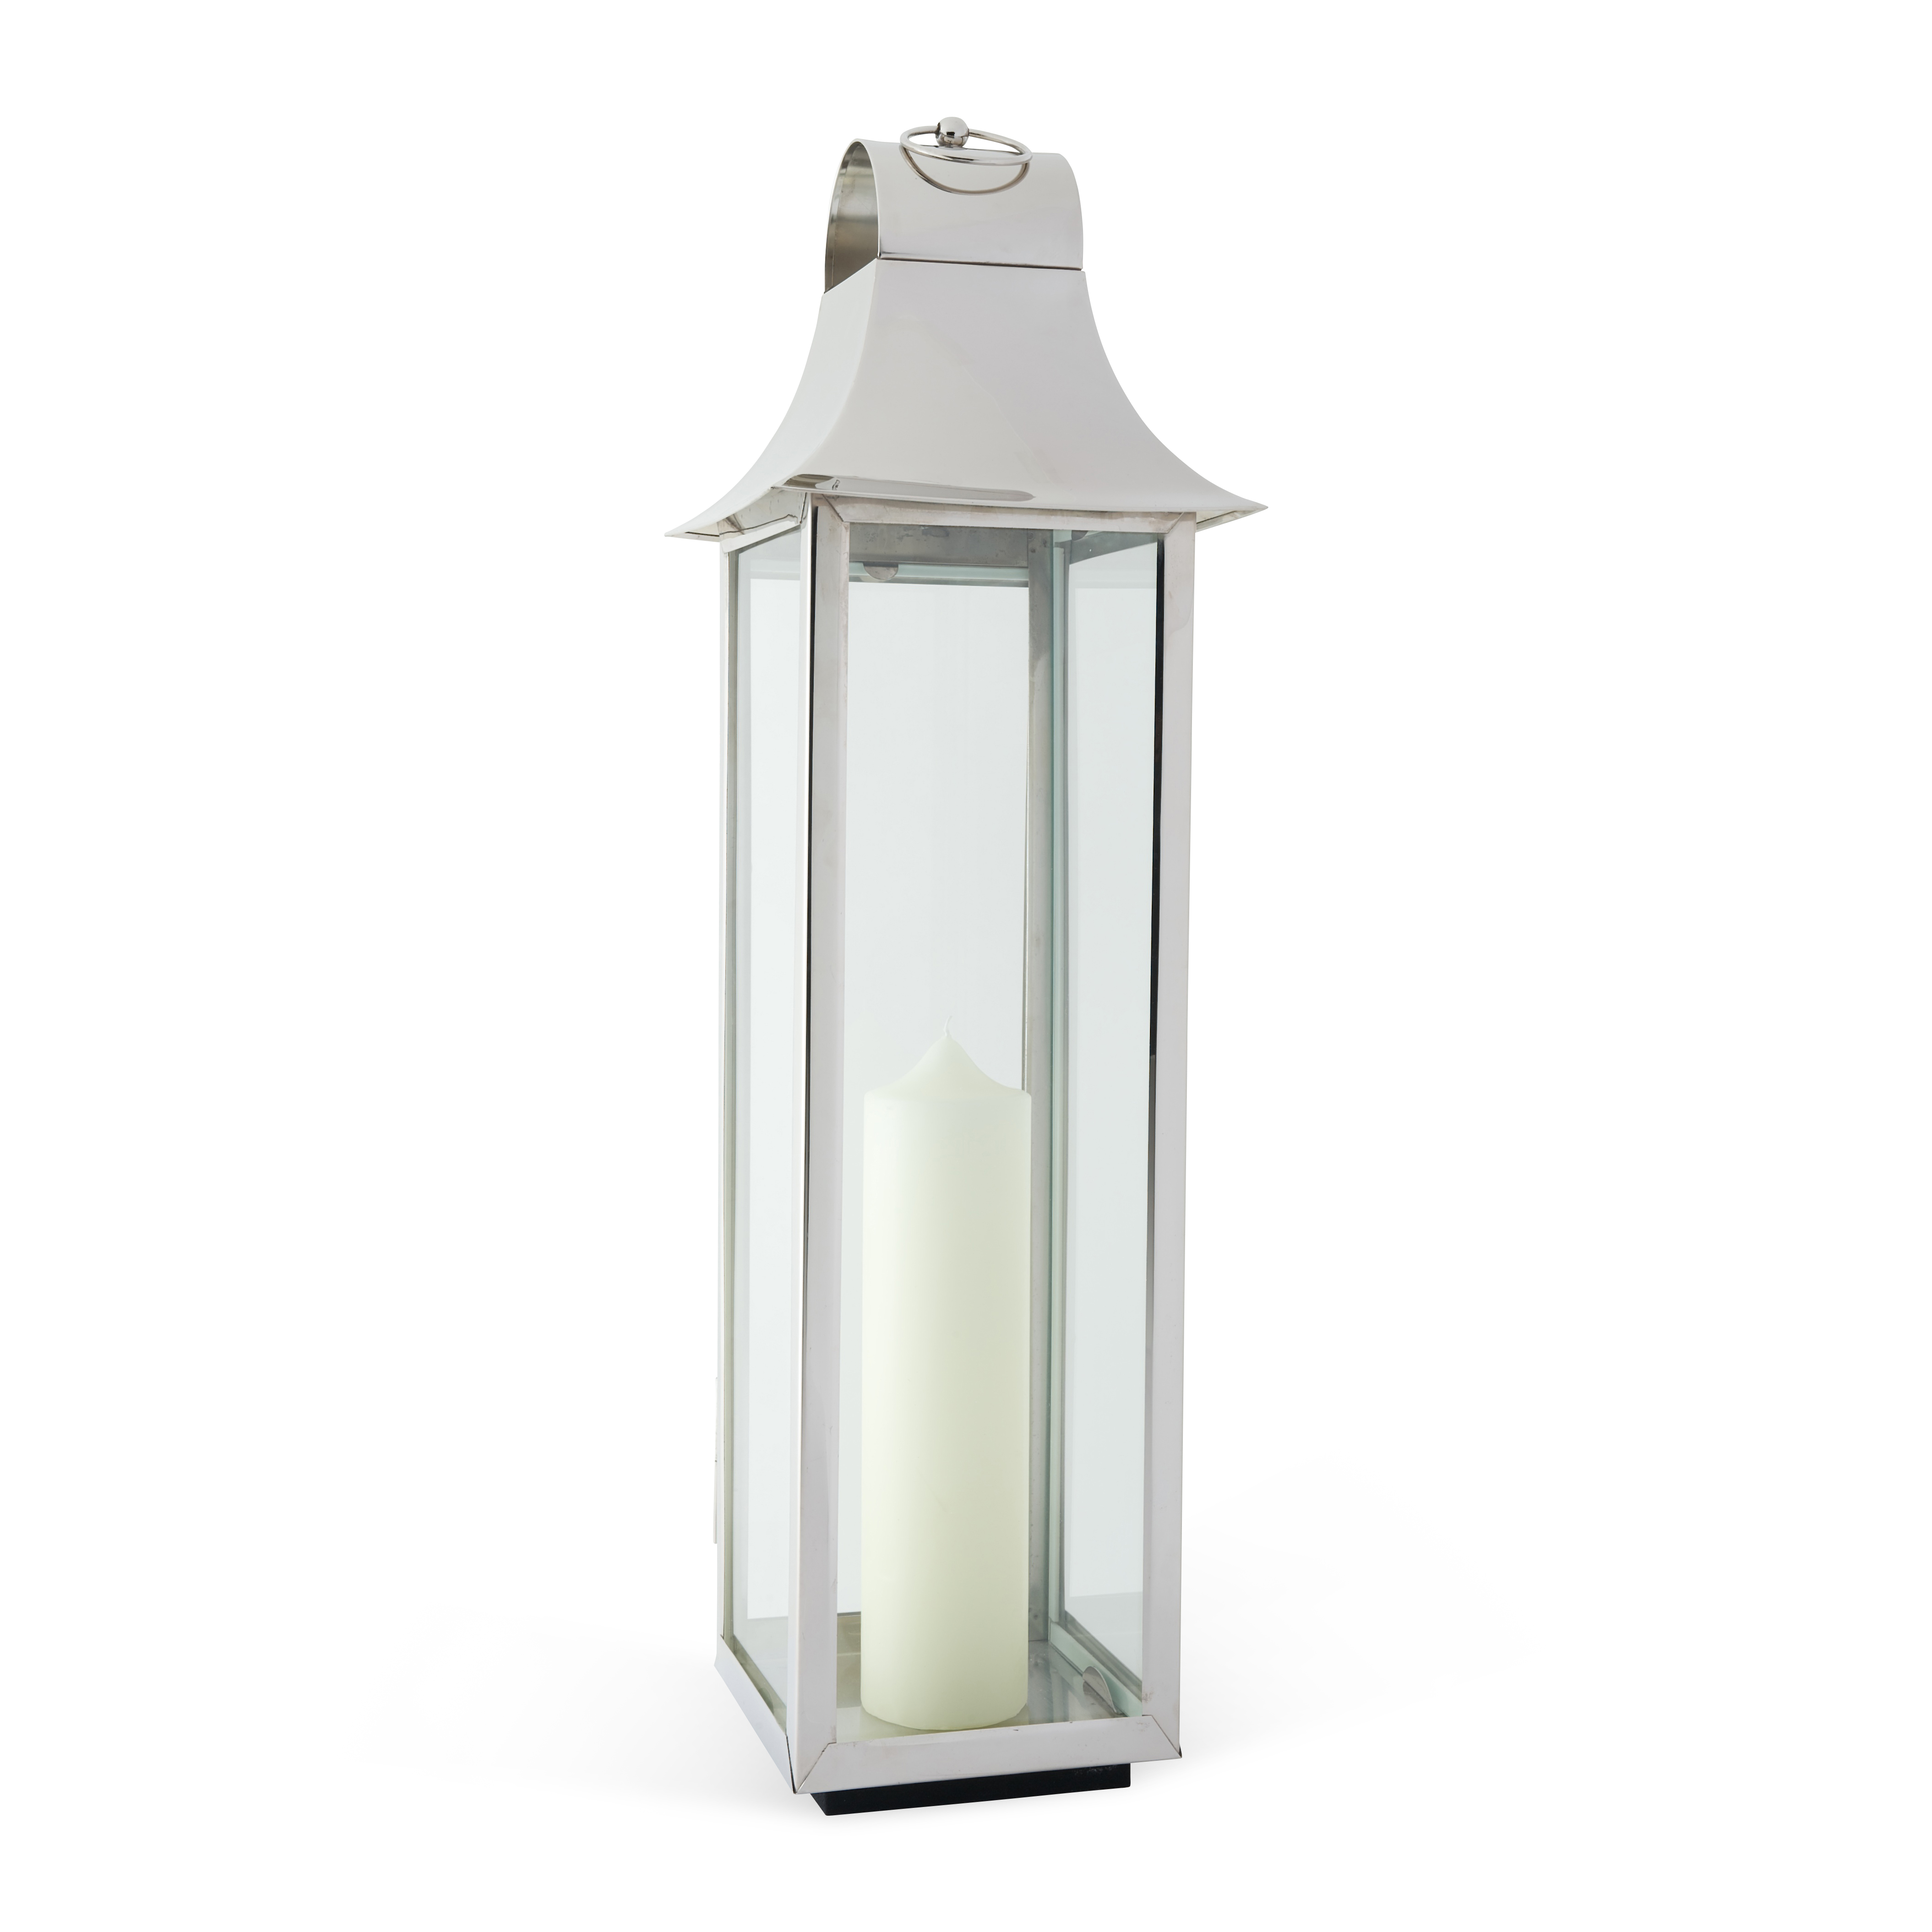 category_S5556 - Lantern - Large